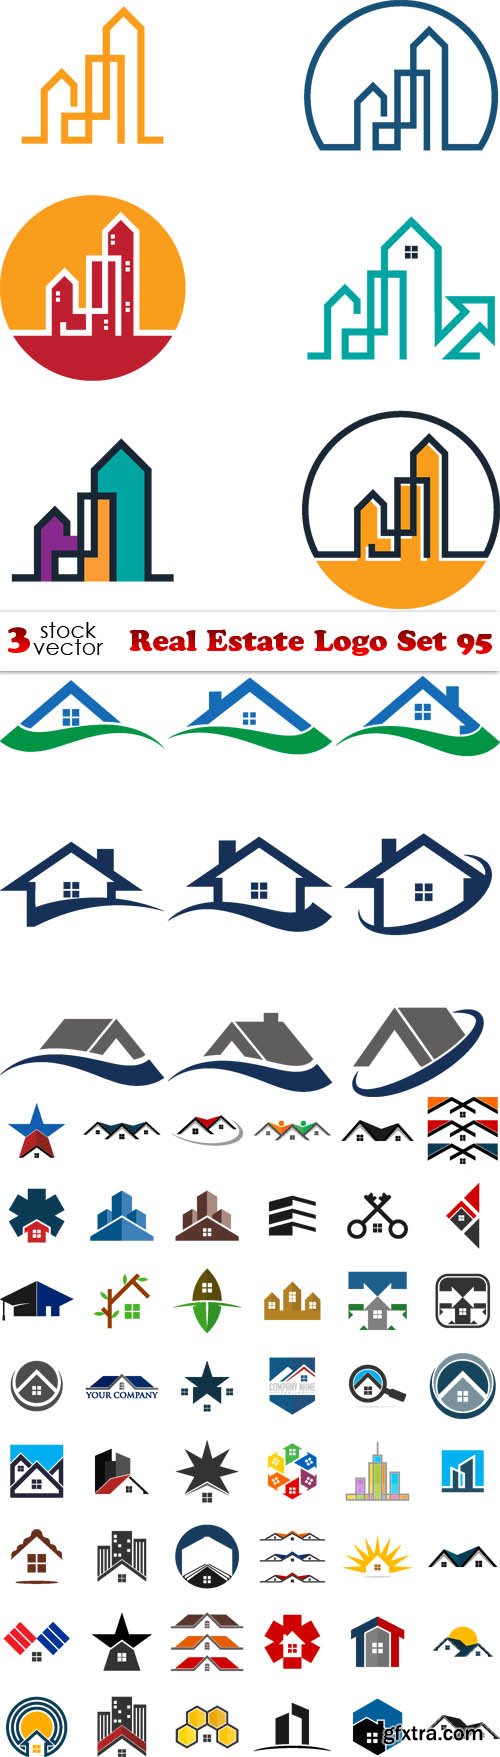 Vectors - Real Estate Logo Set 95